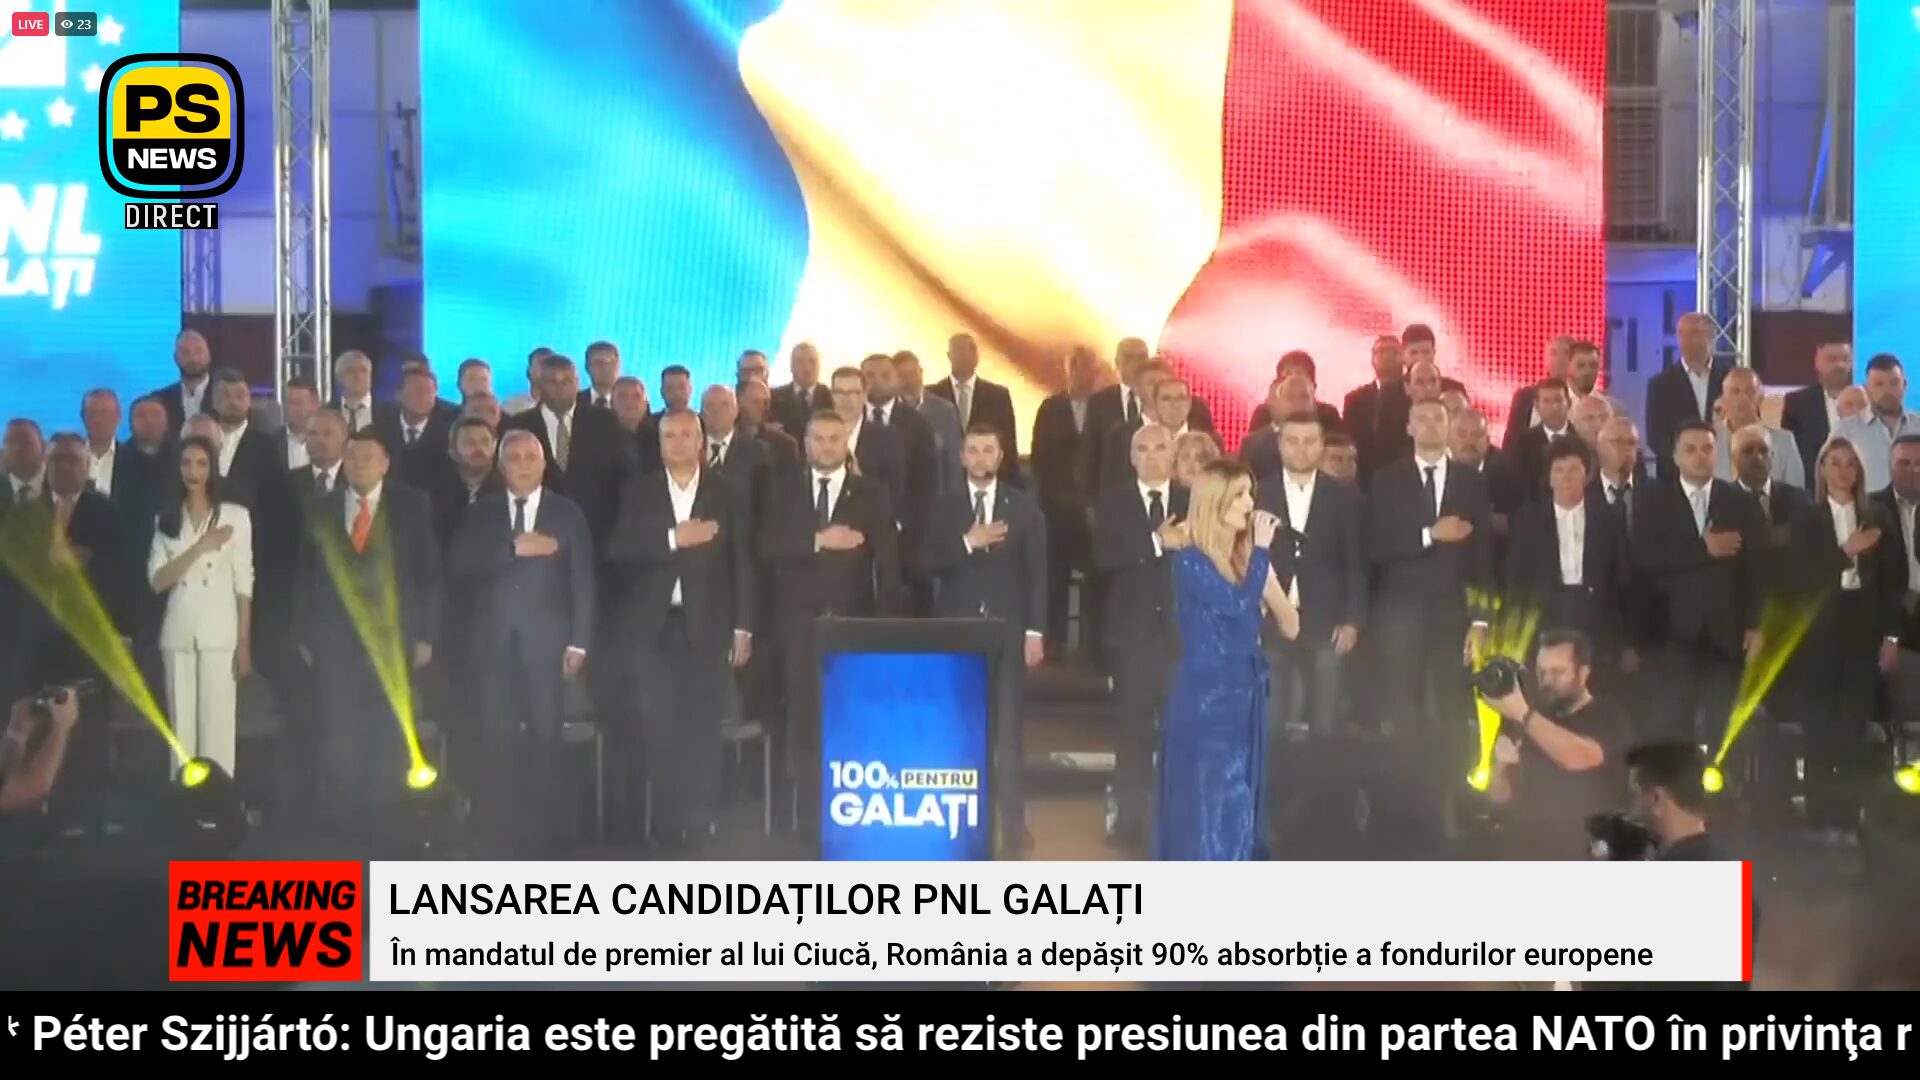 PS News TV | Lansarea candidaților PNL Galați